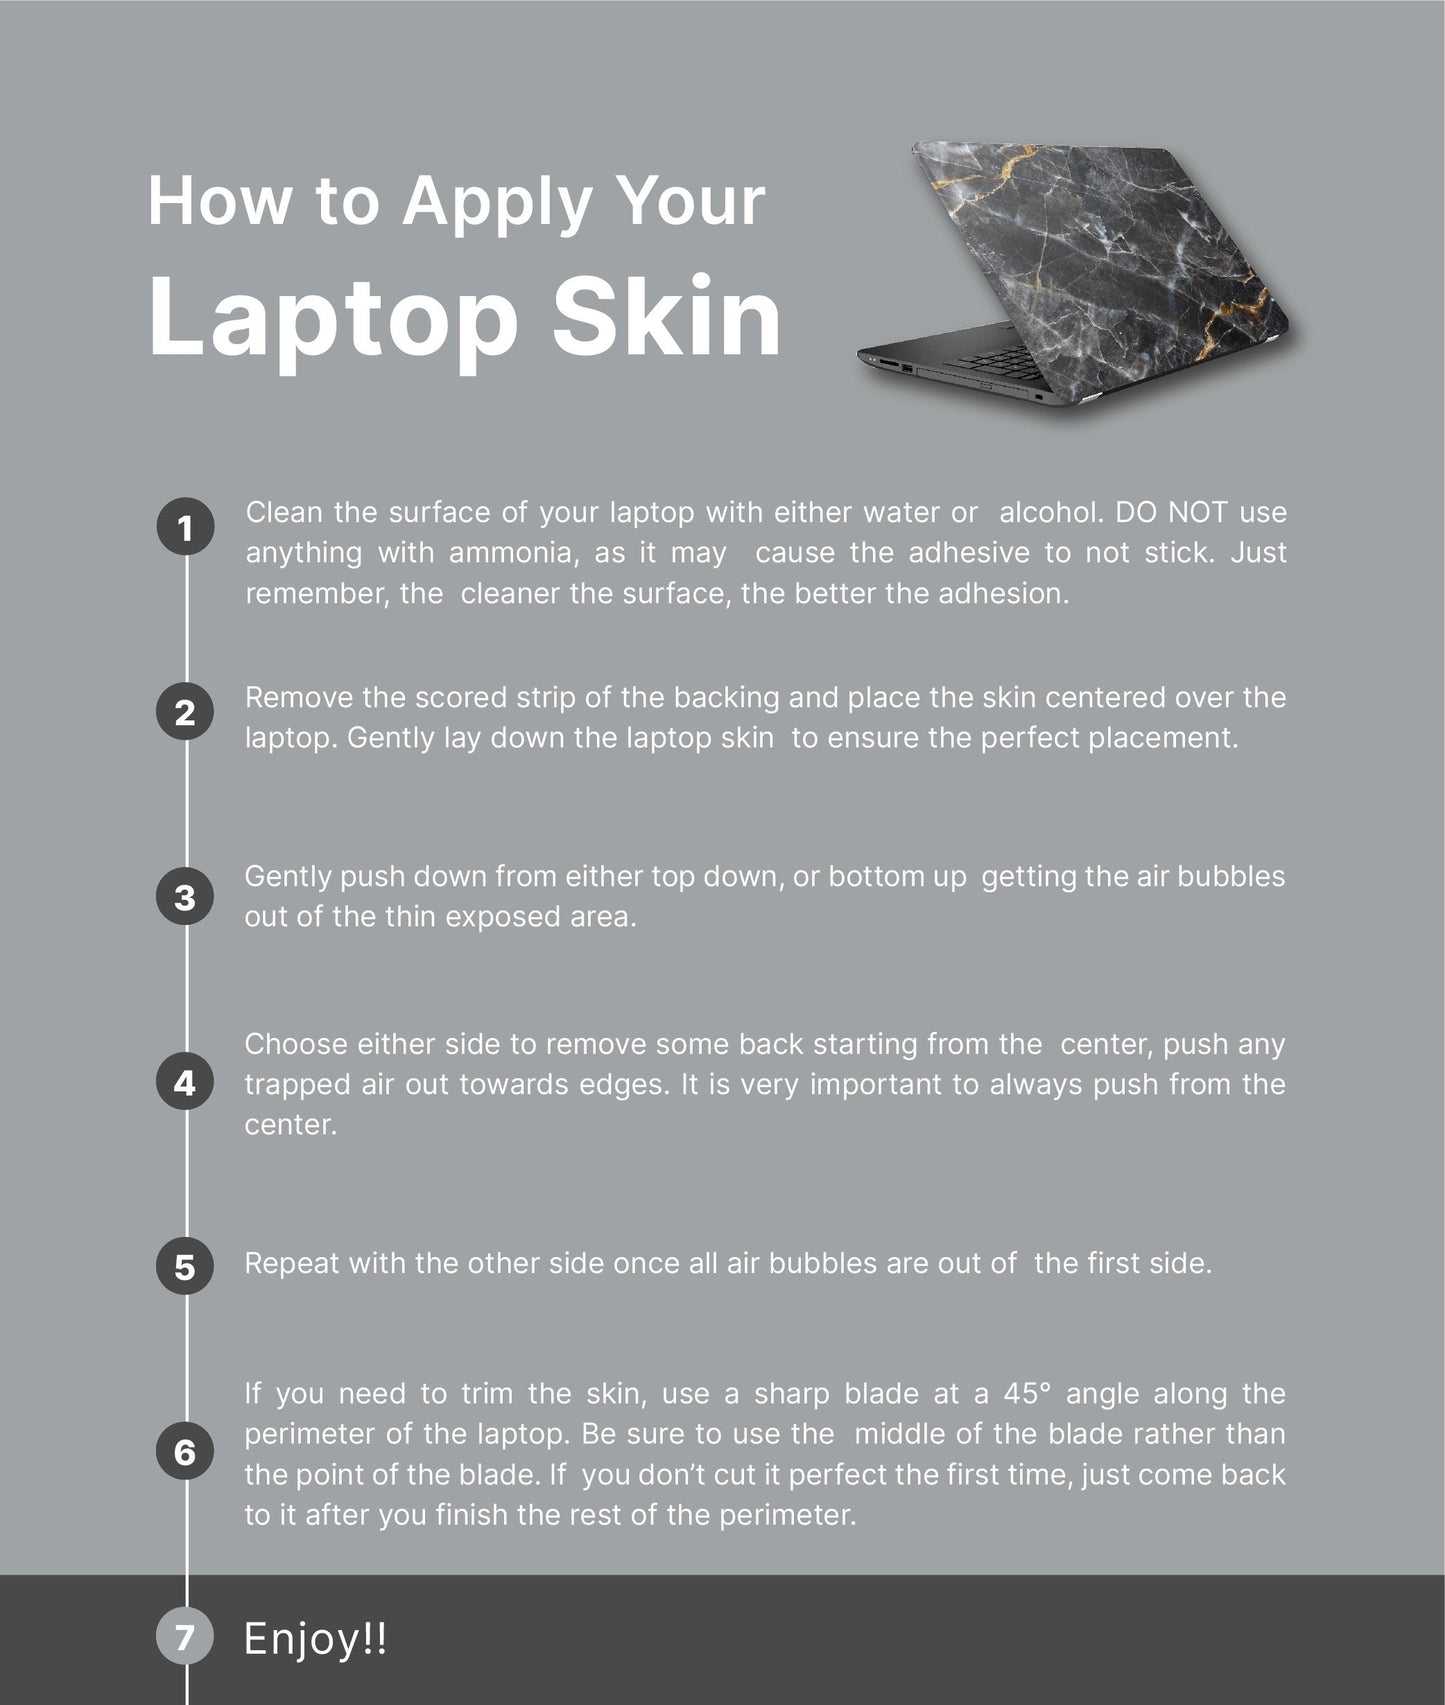 Wildflower Dark Laptop Skin, Laptop Cover, Laptop Skins, Removable Laptop Skins, Laptop Decal, Customized Laptop Skin, Laptop Stickers 86 - James & Inks